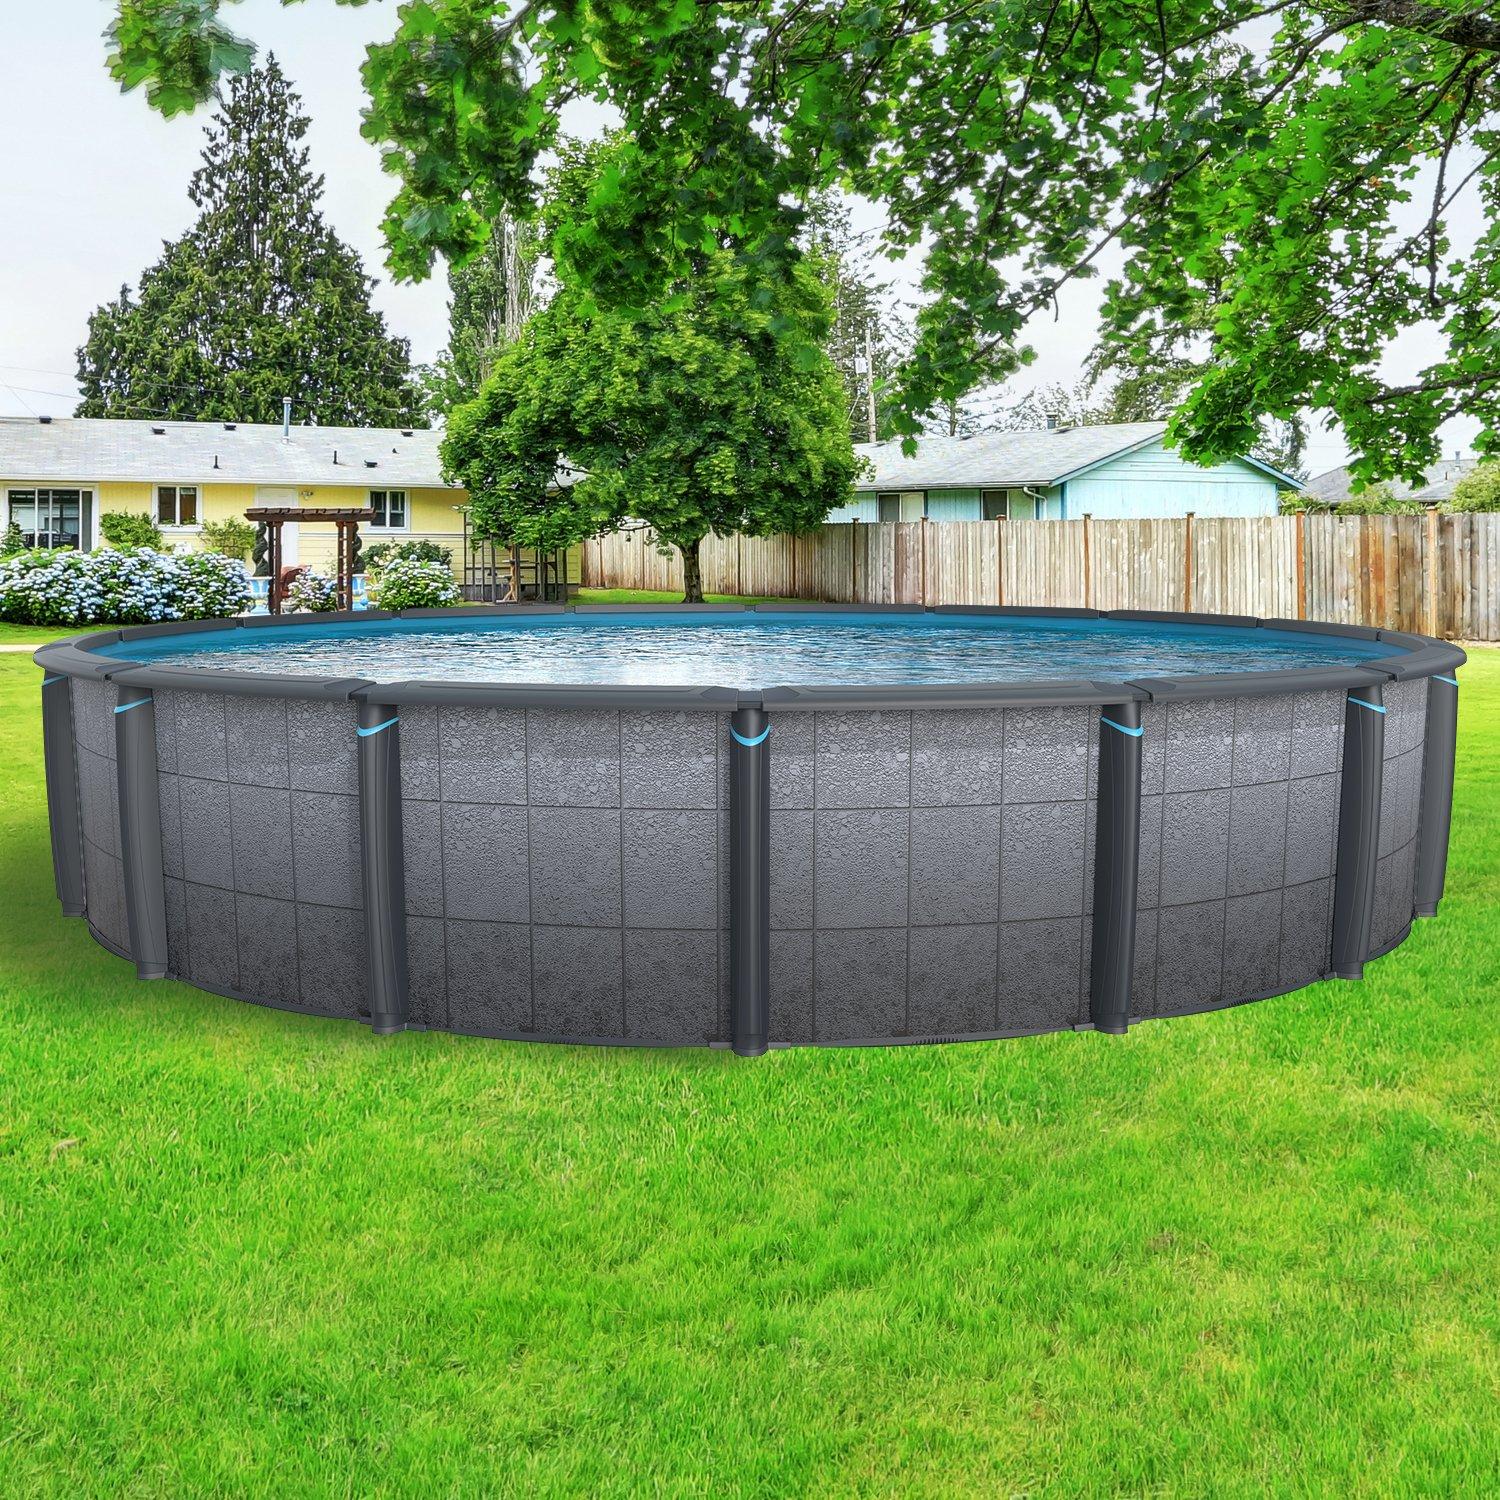 Trvalá kovová stěna nadzemního bazénu